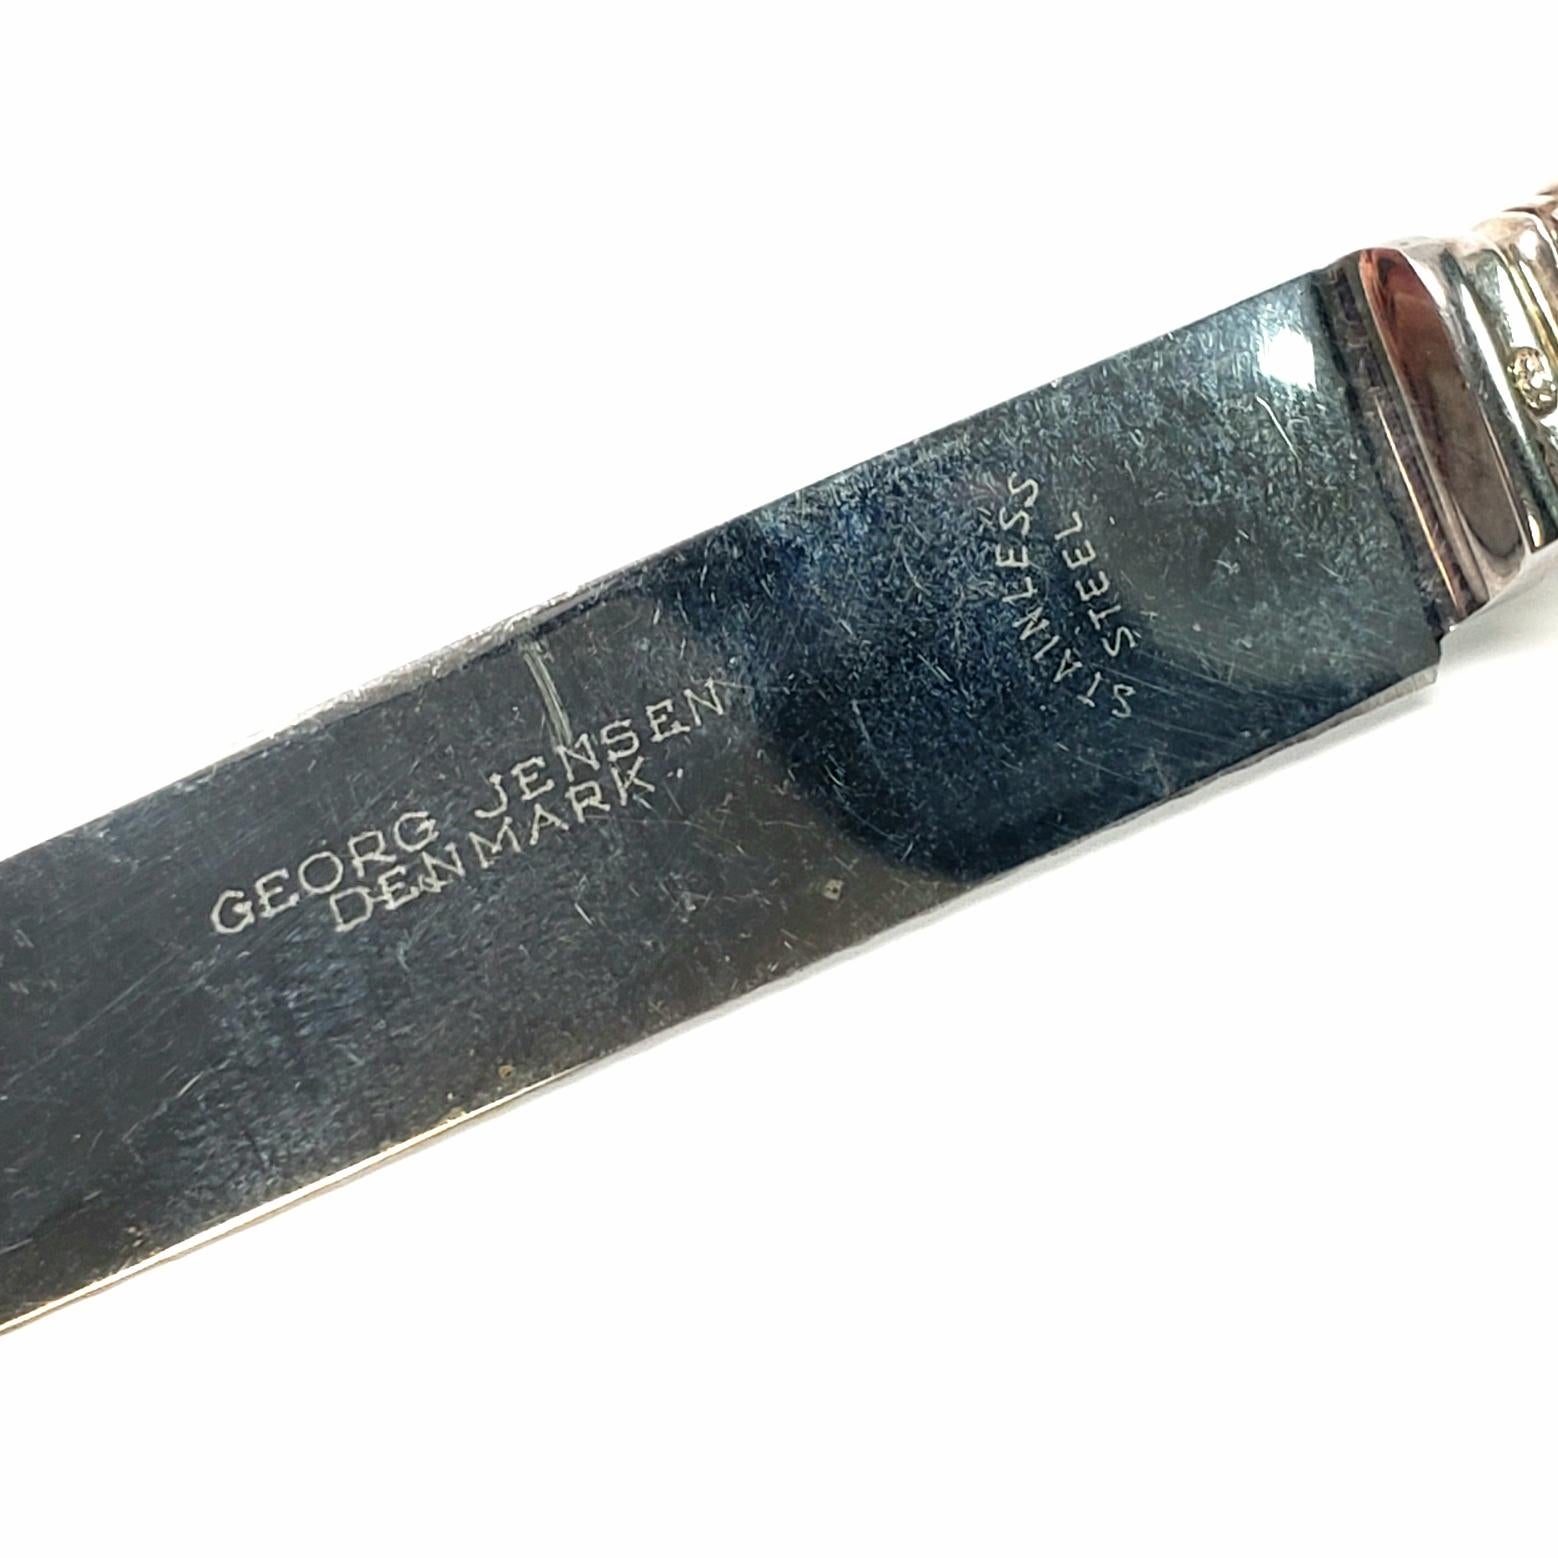 Georg Jensen Denmark Sterling Silver Acorn Cheese or Bar Knife 4